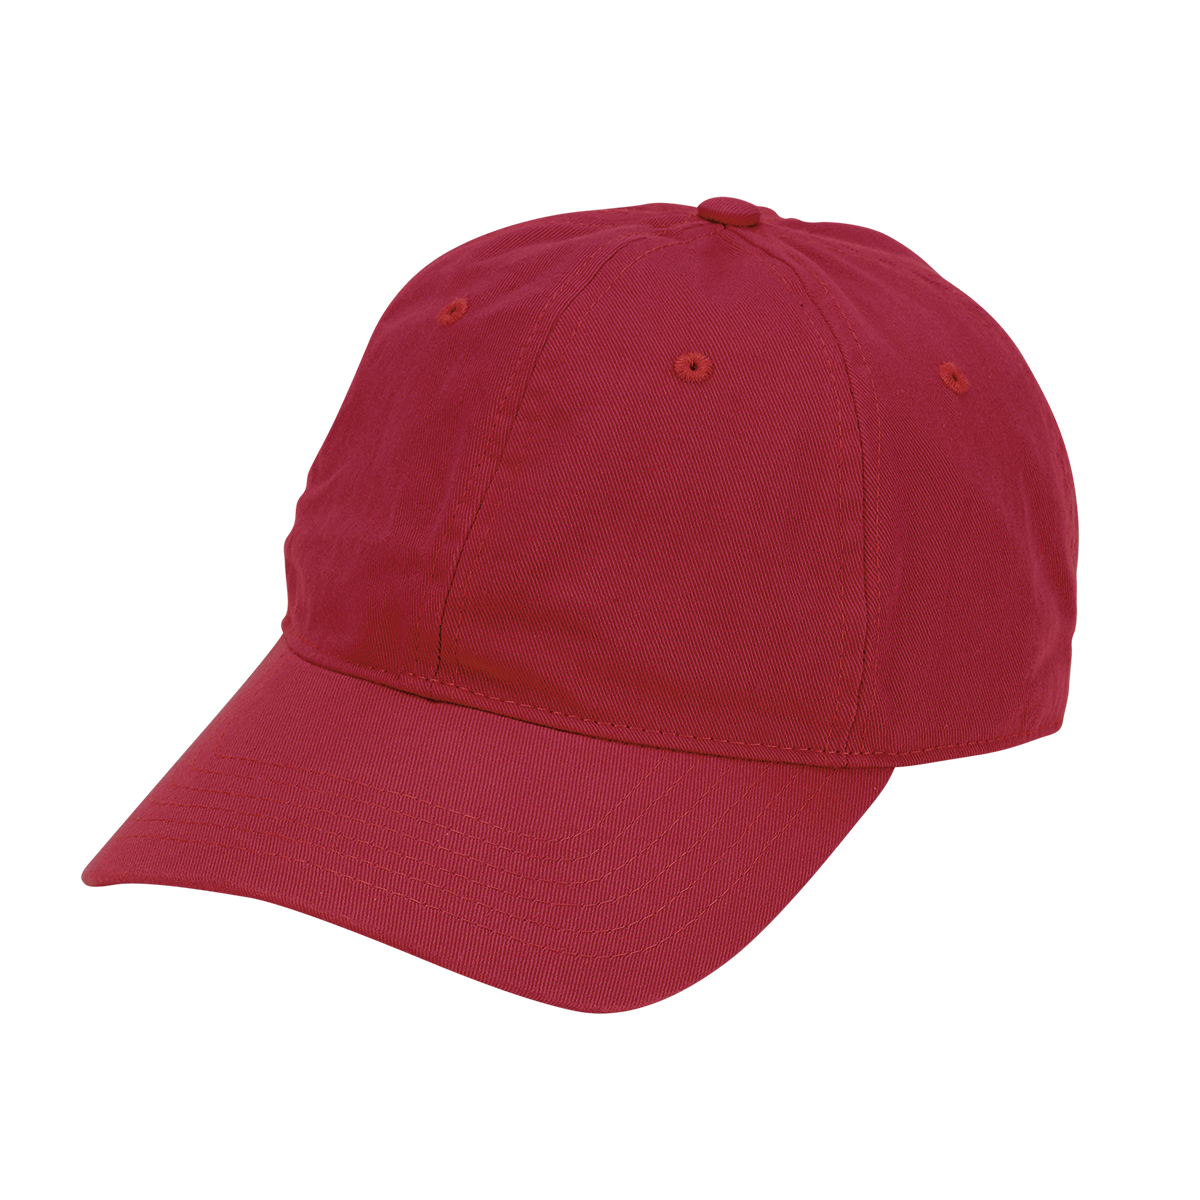 Personalized Baseball Hat